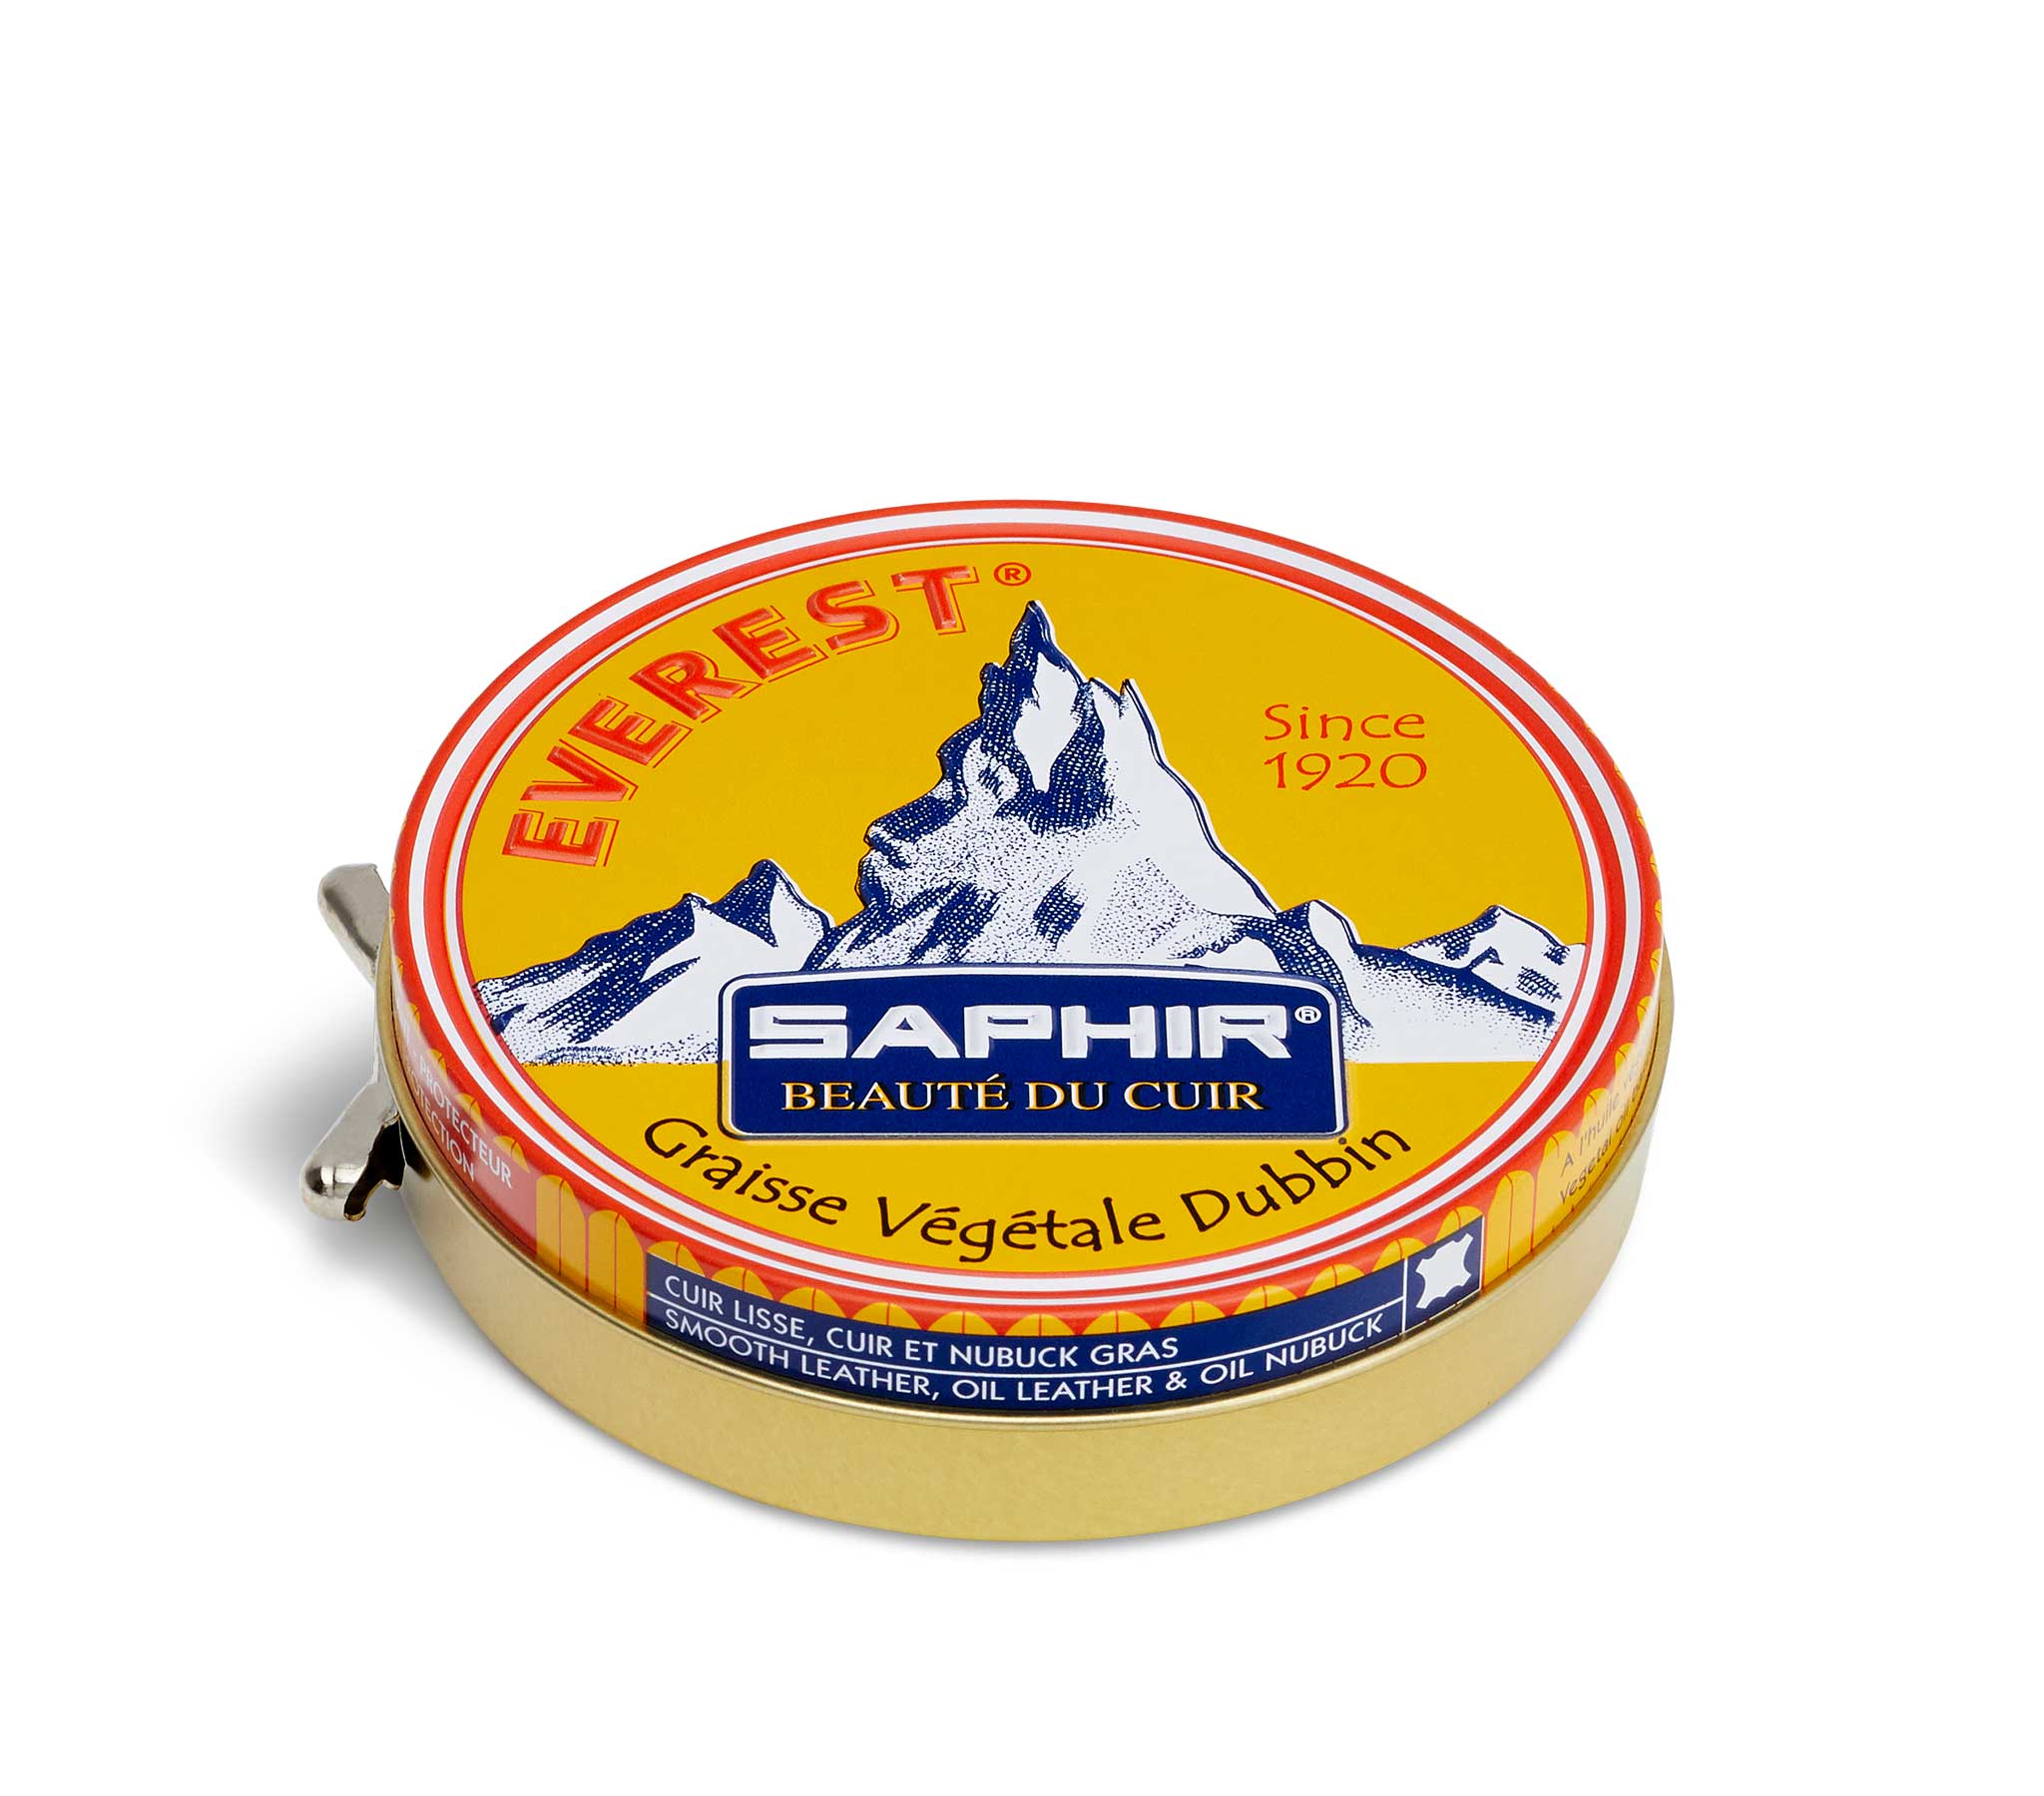 Saphir Beaute du Cuir - Everest Dubbin